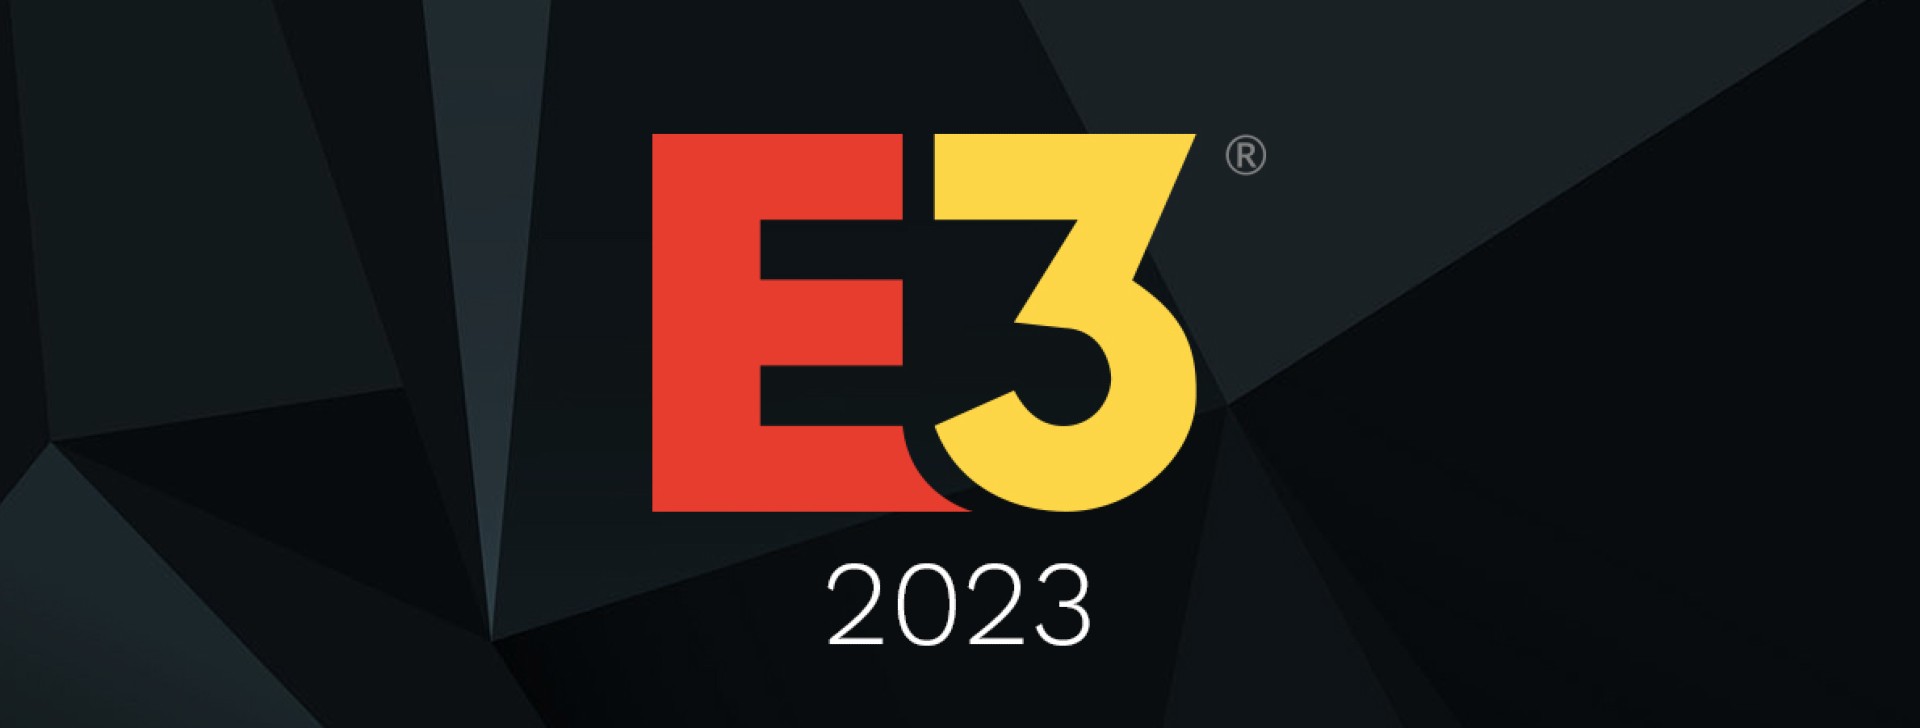 E3 ประจำปี ค.ศ. 2023 ประกาศยกเลิกแล้ว เพราะค่ายเกมใหญ่ไม่มาร่วม